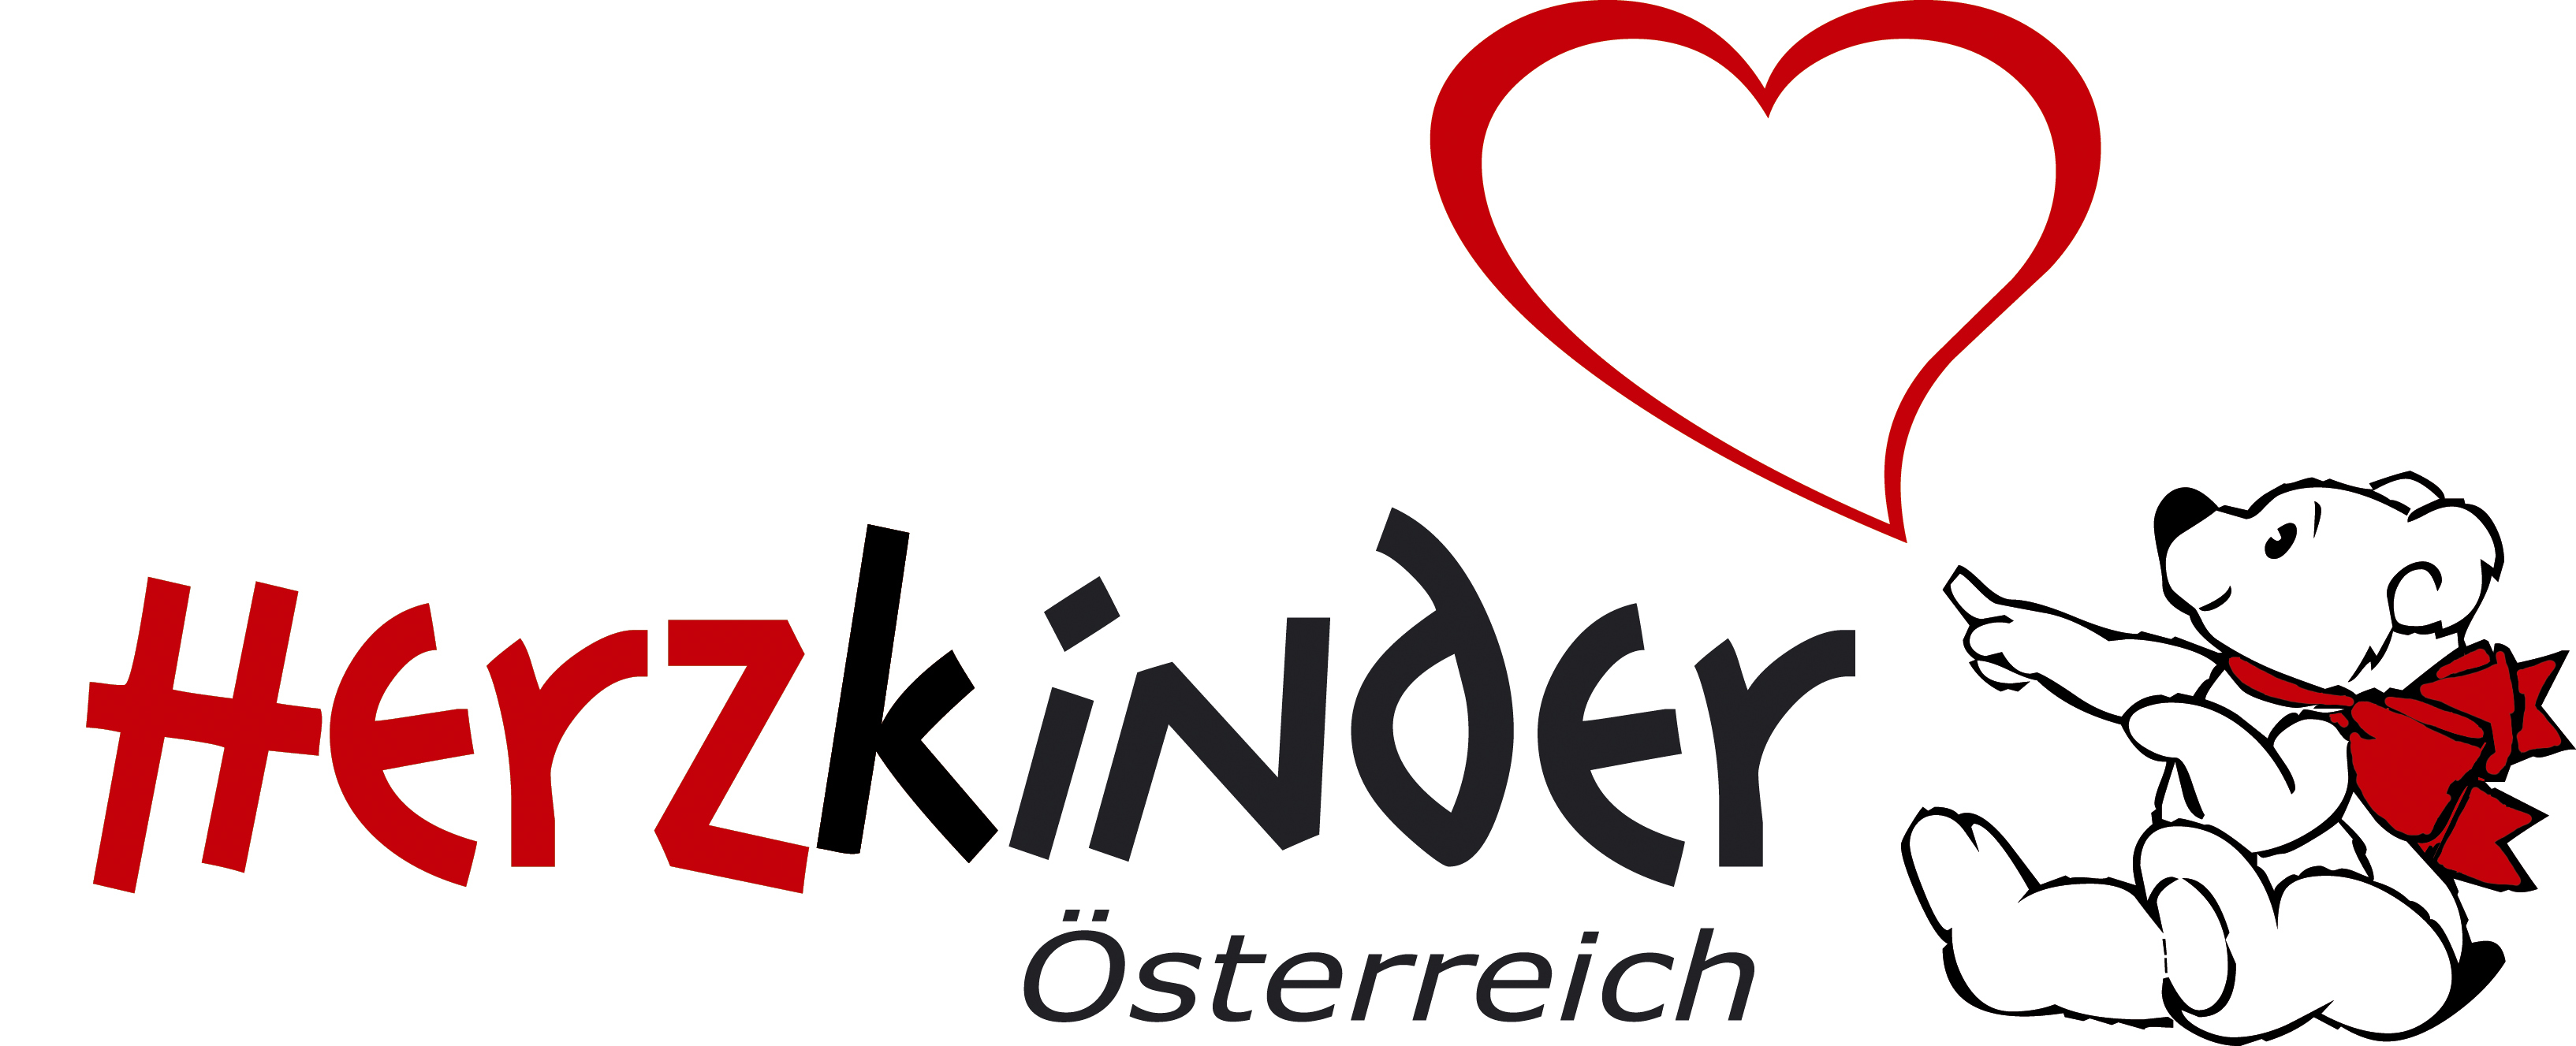 Logo Herzkinder Österreich